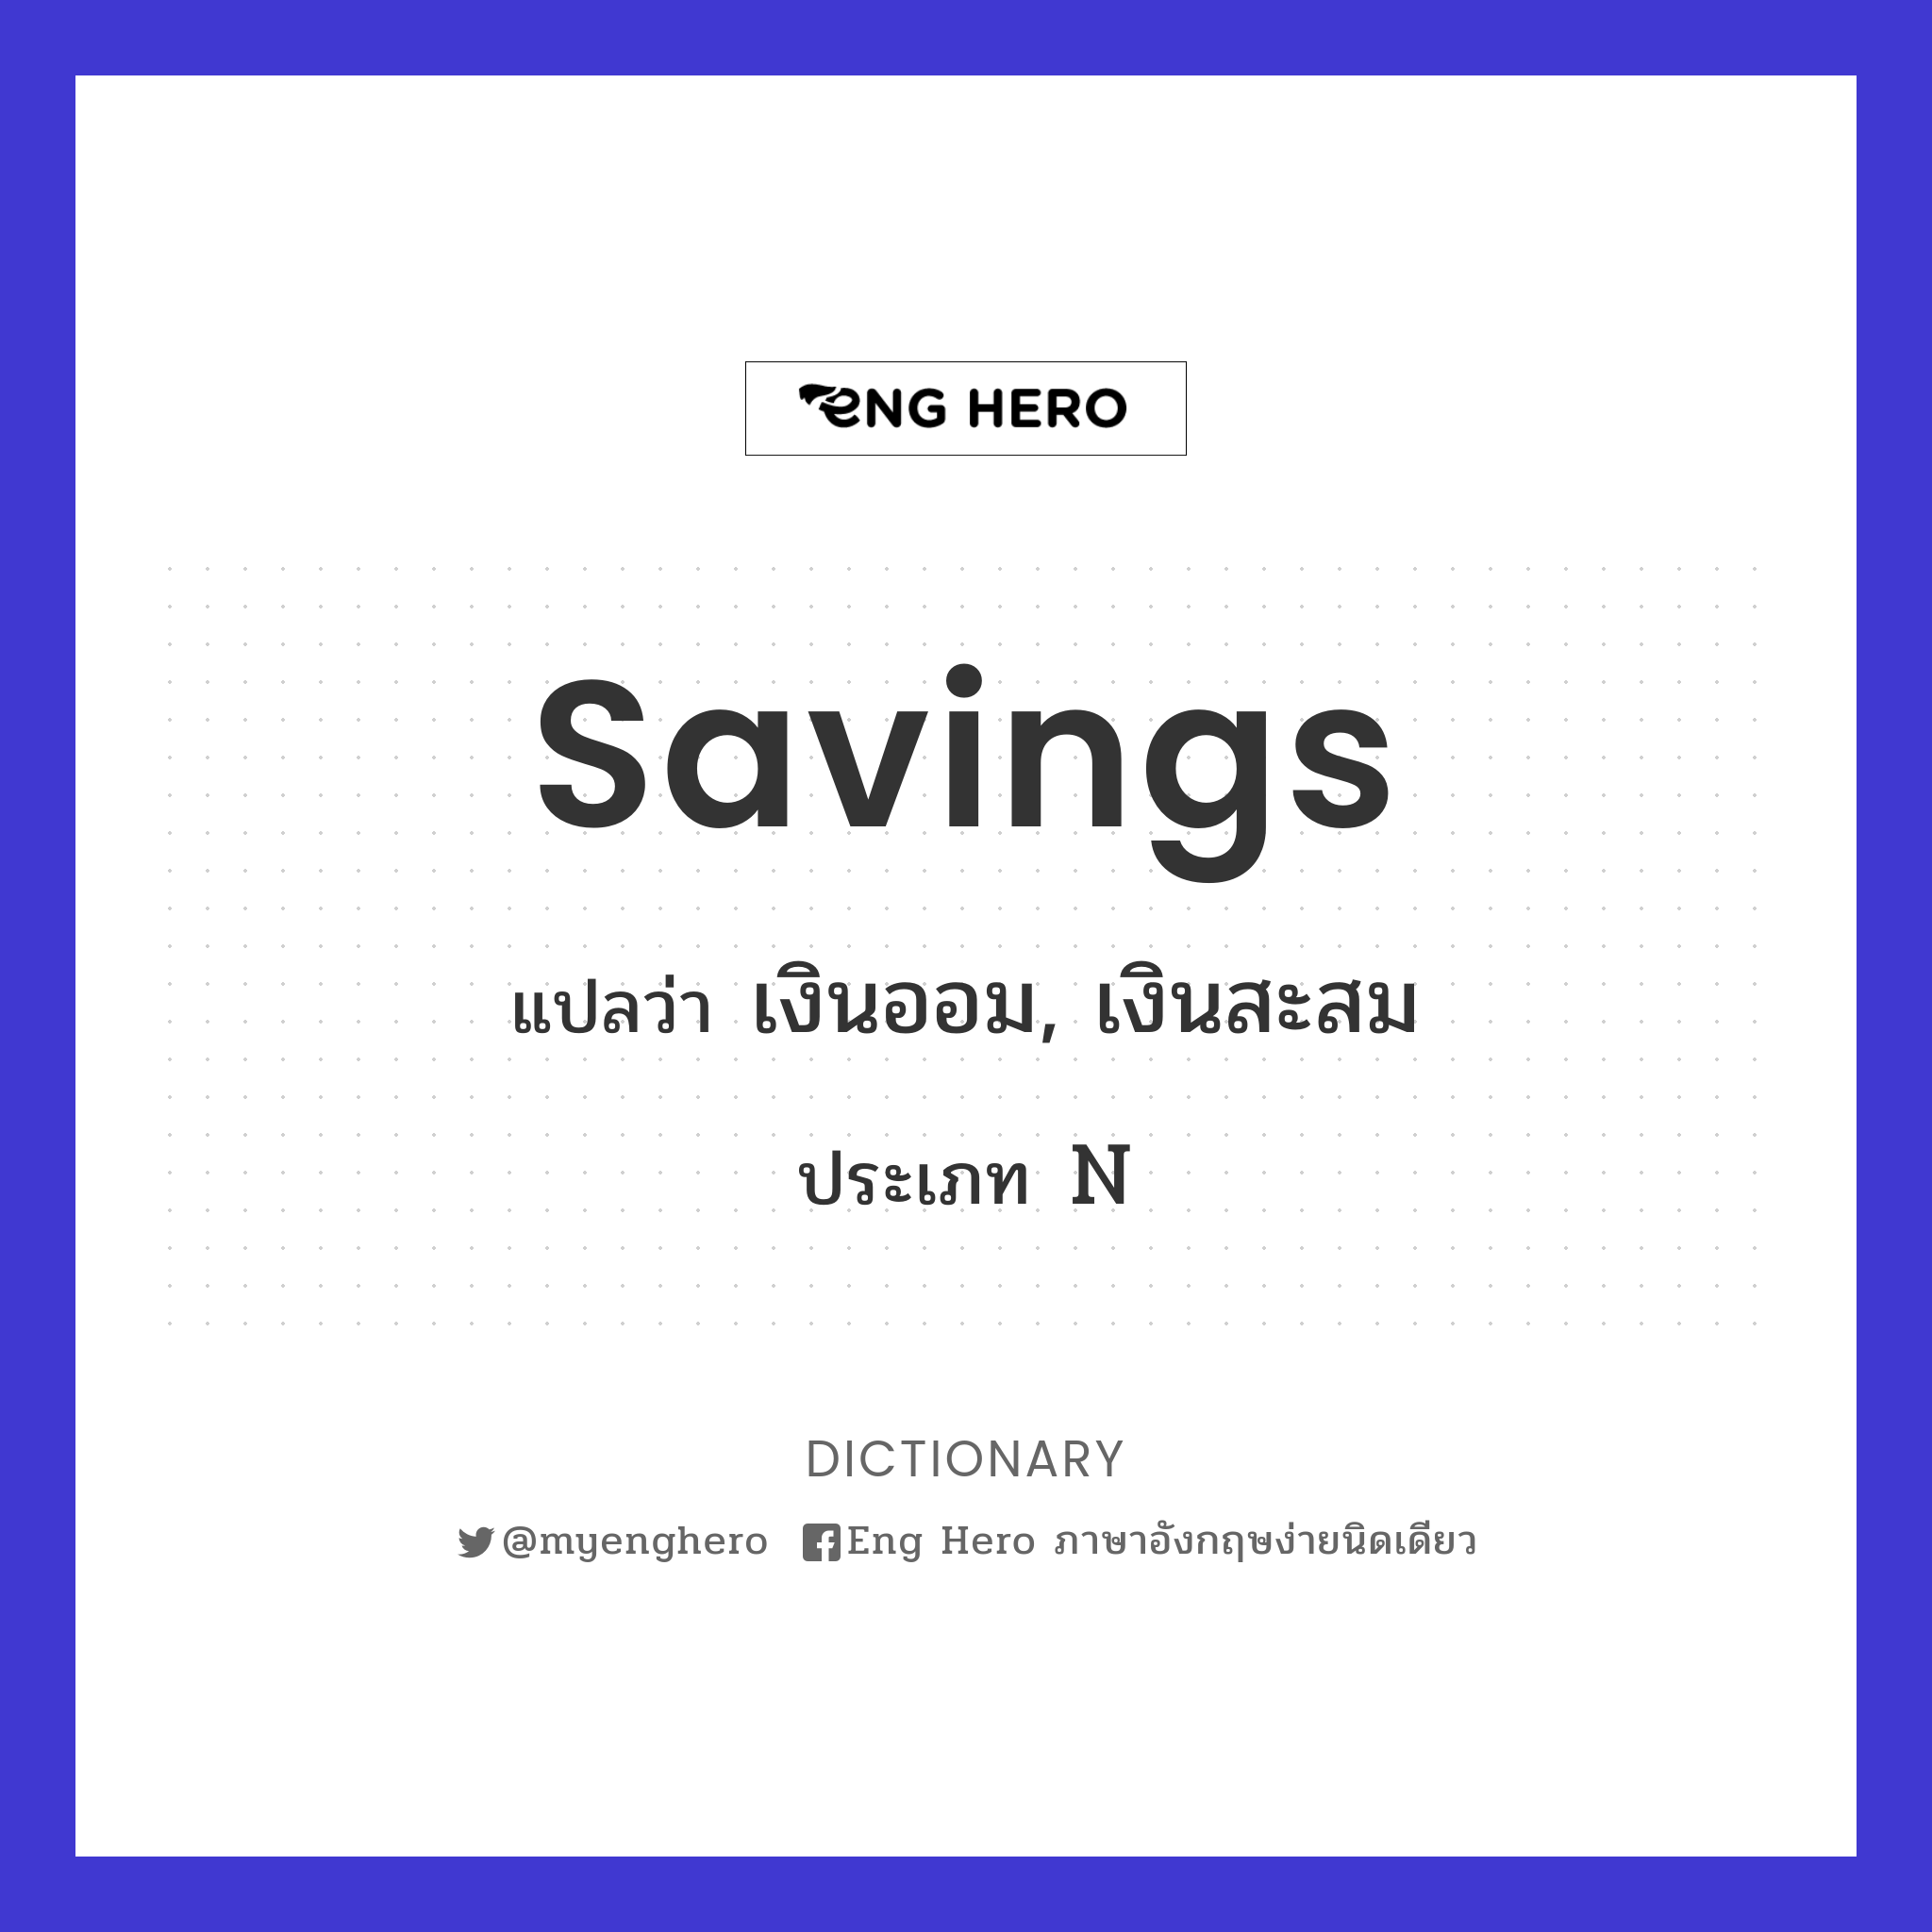 Savings แปลว่า เงินออม, เงินสะสม | Eng Hero เรียนภาษาอังกฤษ ออนไลน์ ฟรี